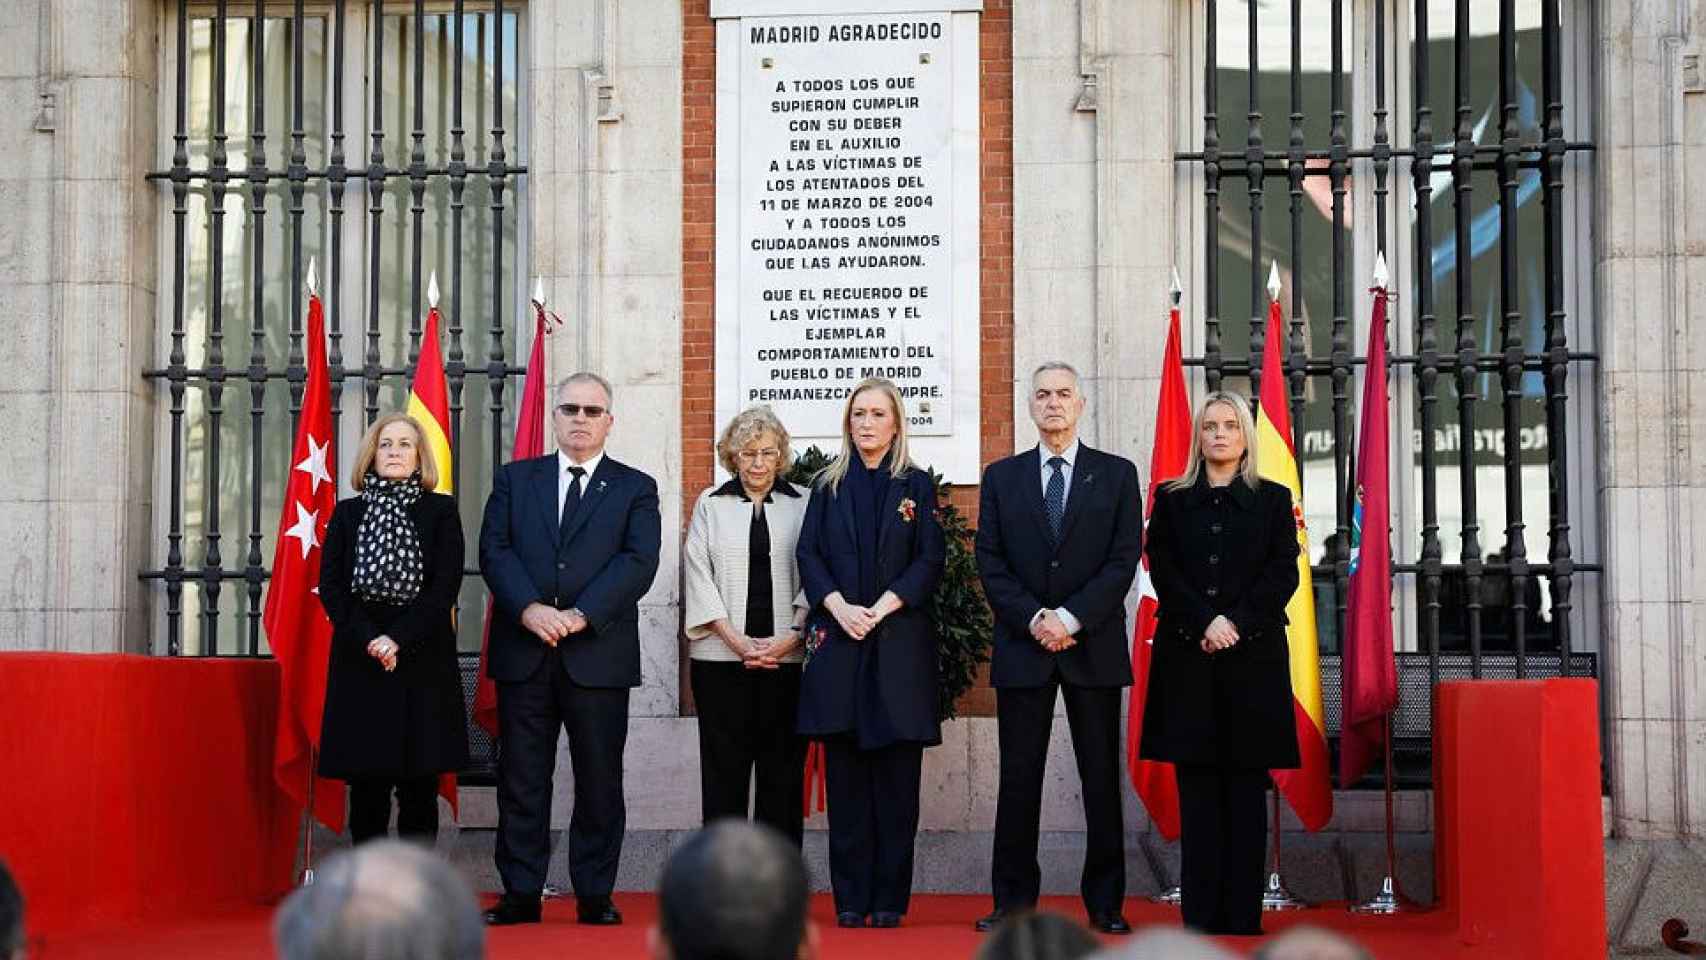 Acto de homenaje en la Puerta del Sol, con Manuela Carmena y Cristina Cifuentes al frente.